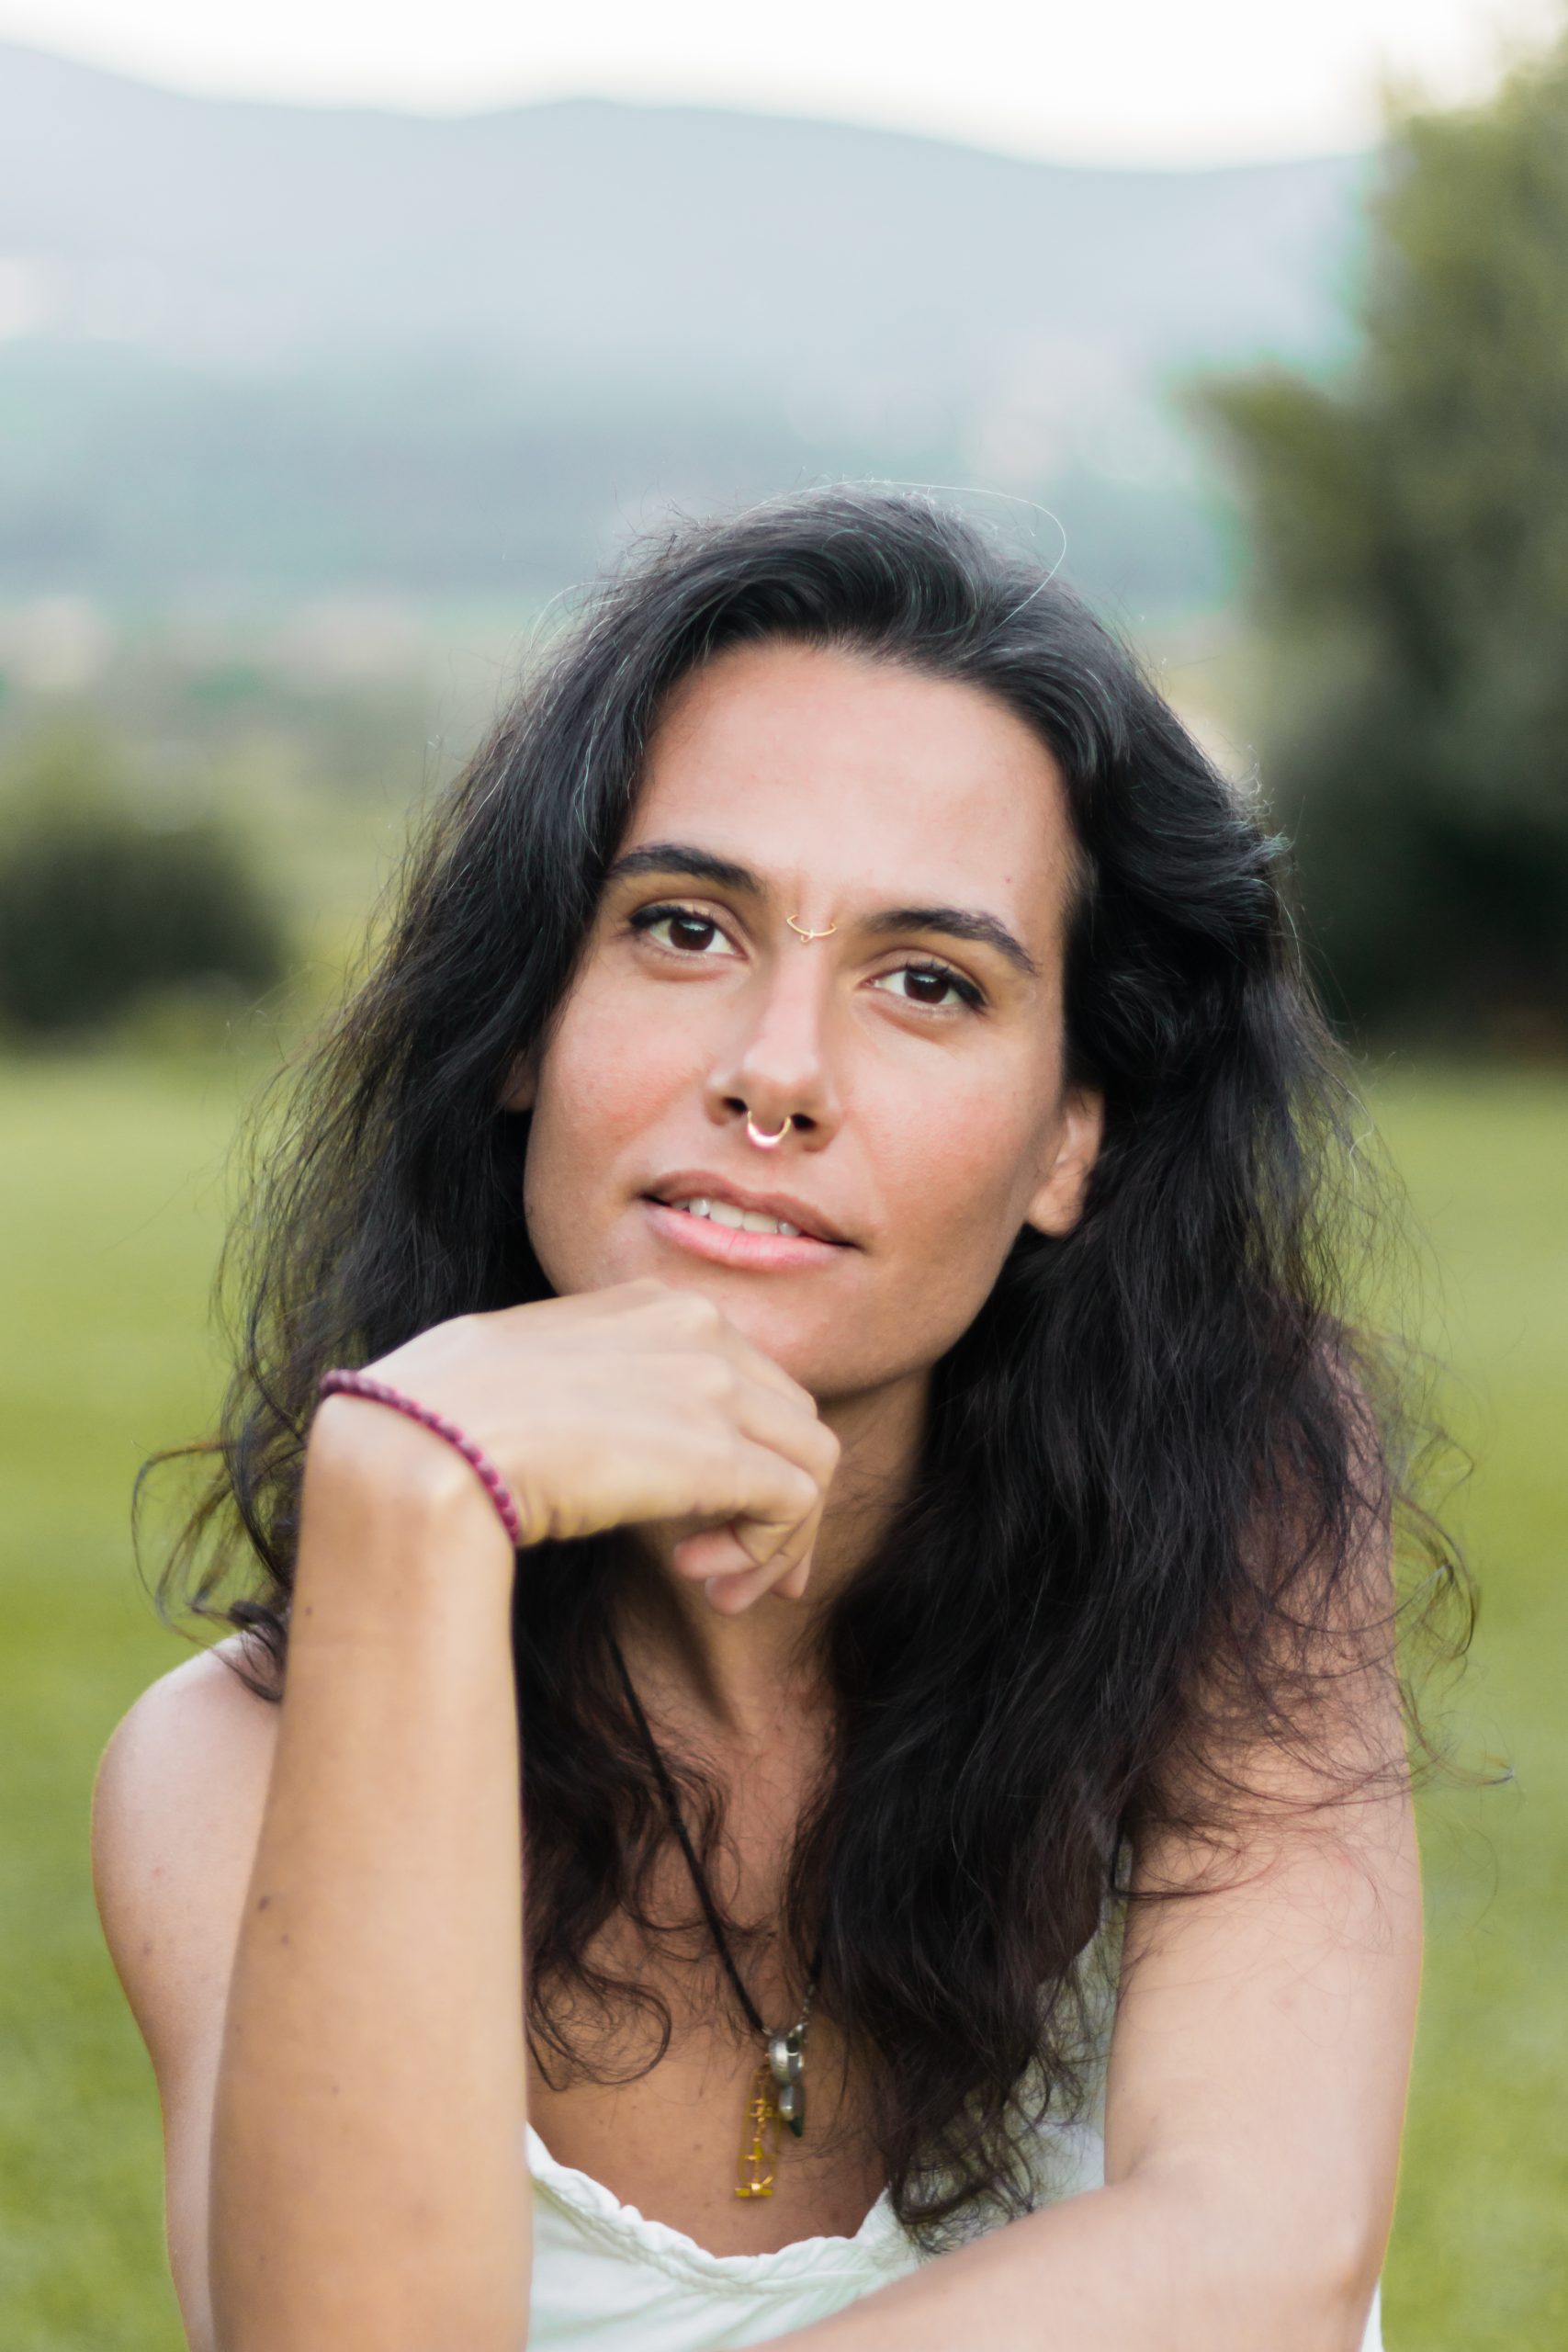 Entrevista. Salomé Areias: “Passámos de uma economia de consumo para uma economia de compulsão e adição”